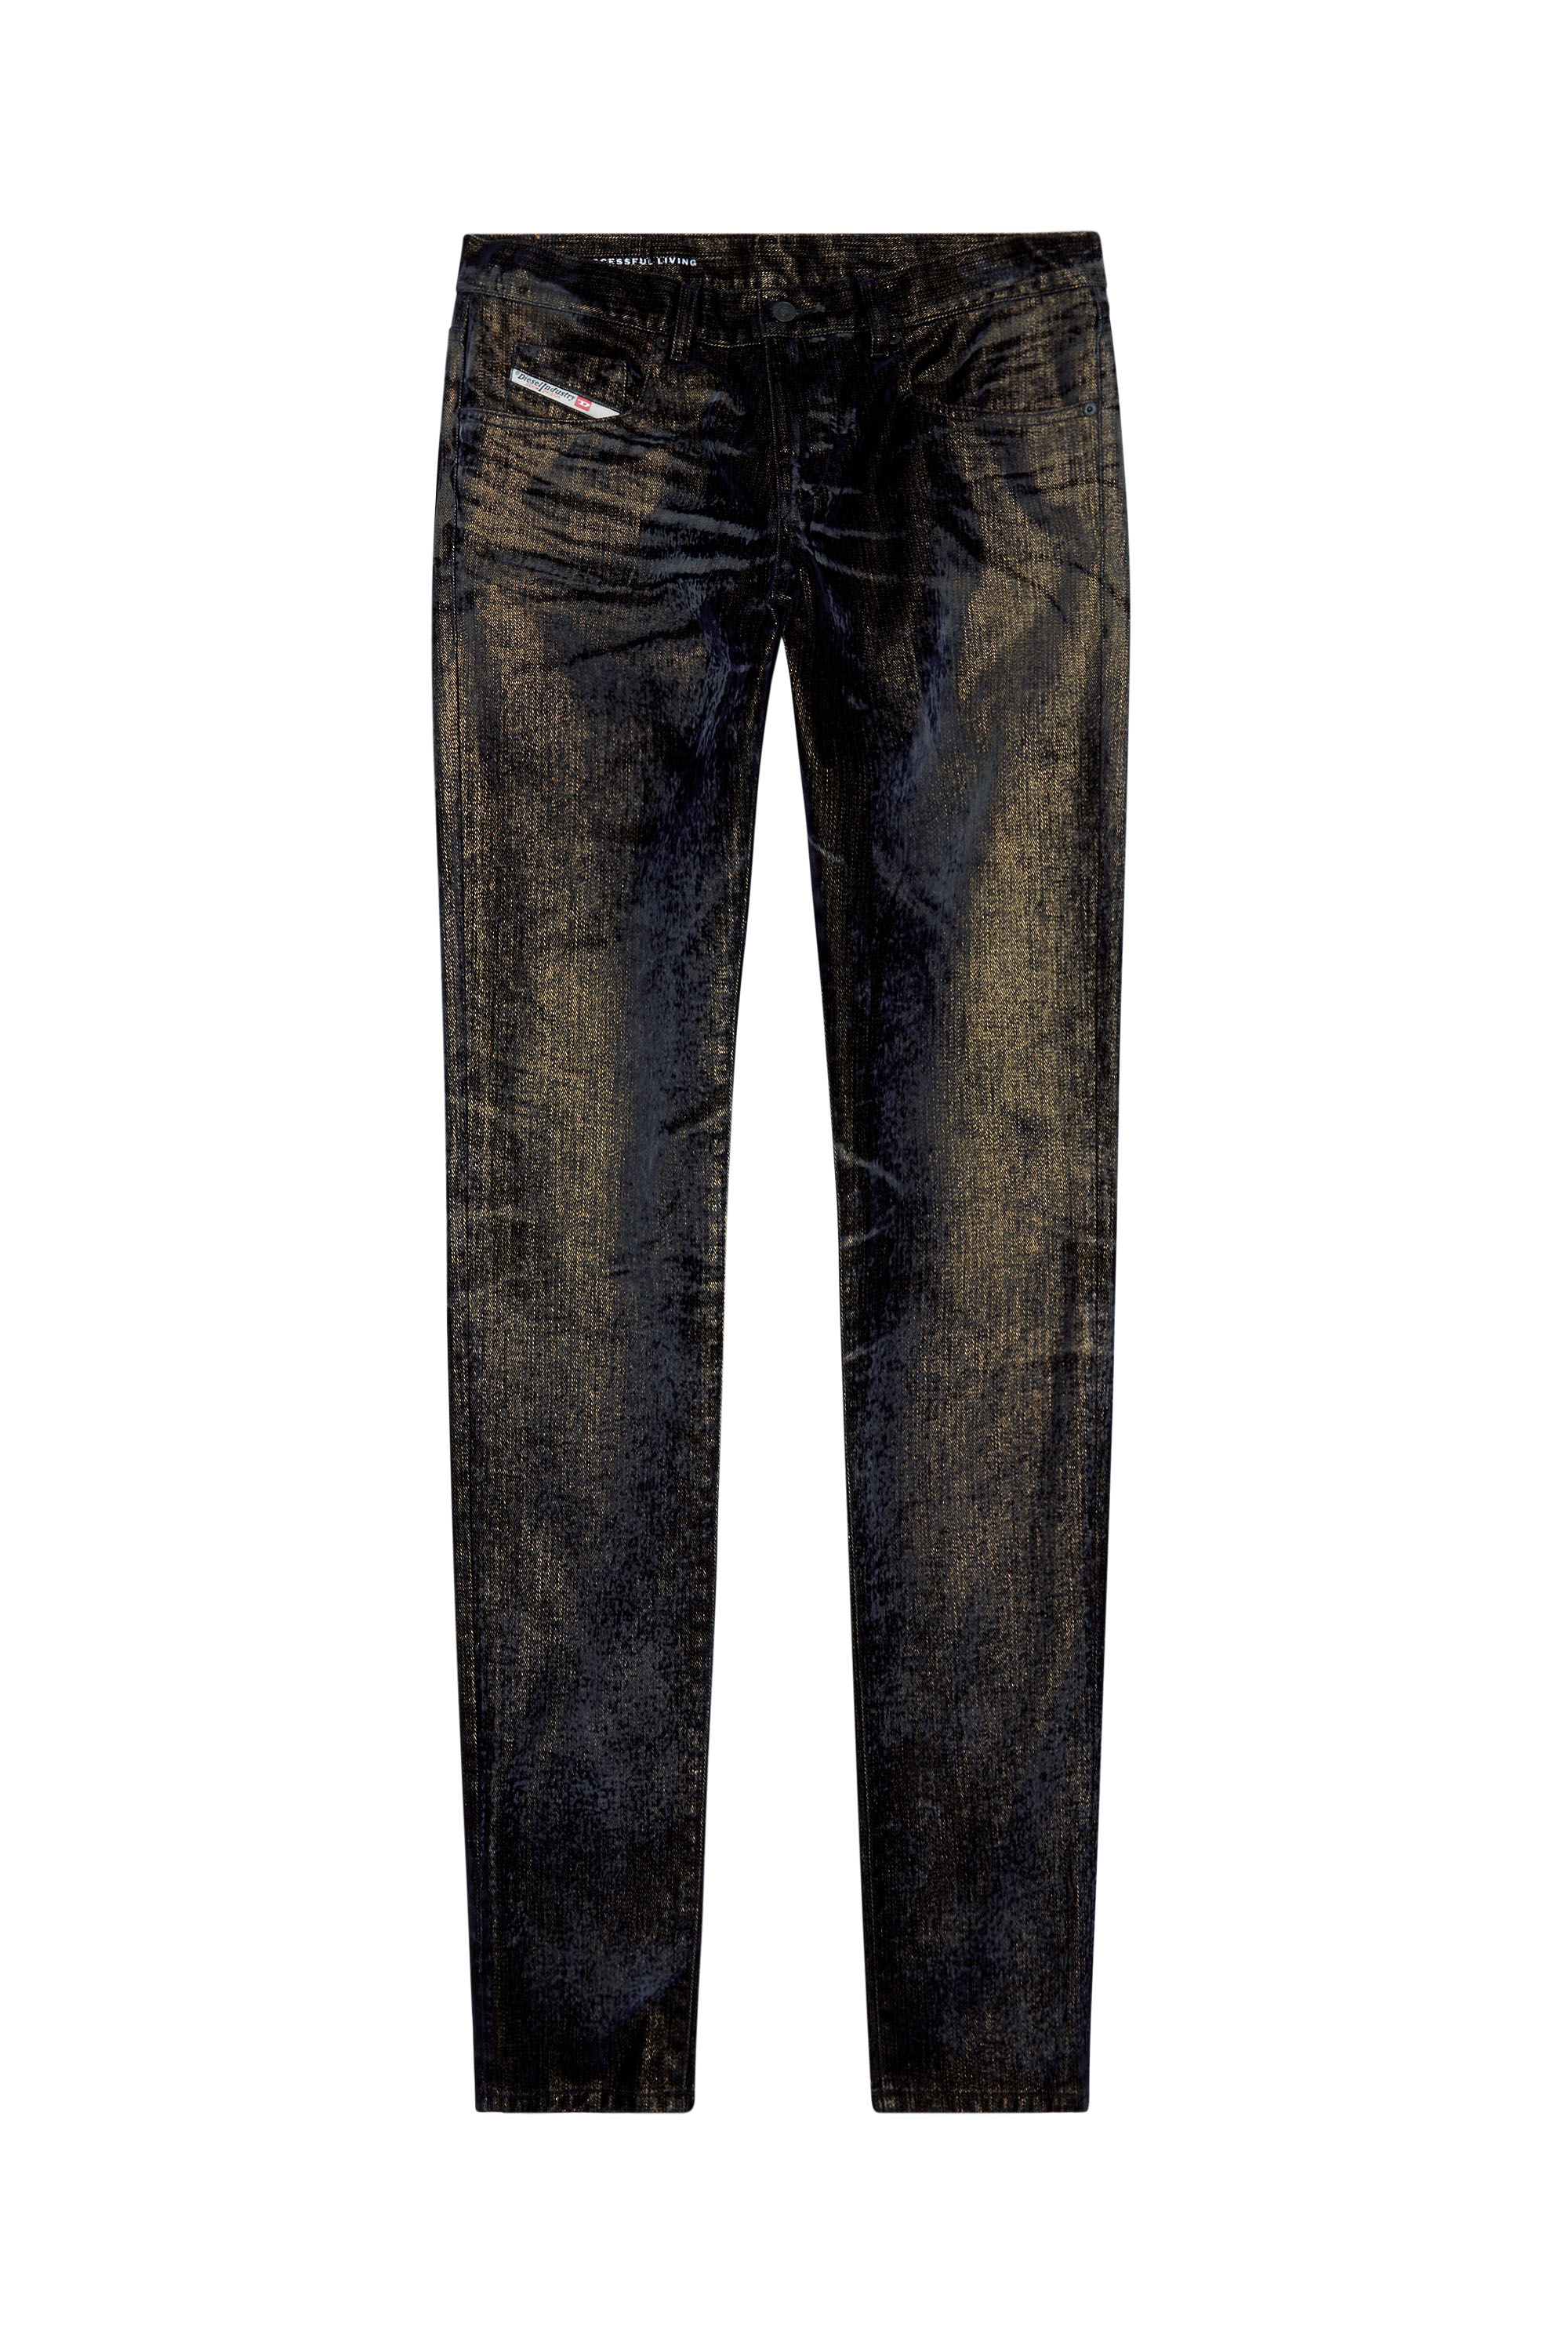 Diesel - Slim Jeans 2019 D-Strukt 09I49, Black/Dark grey - Image 5